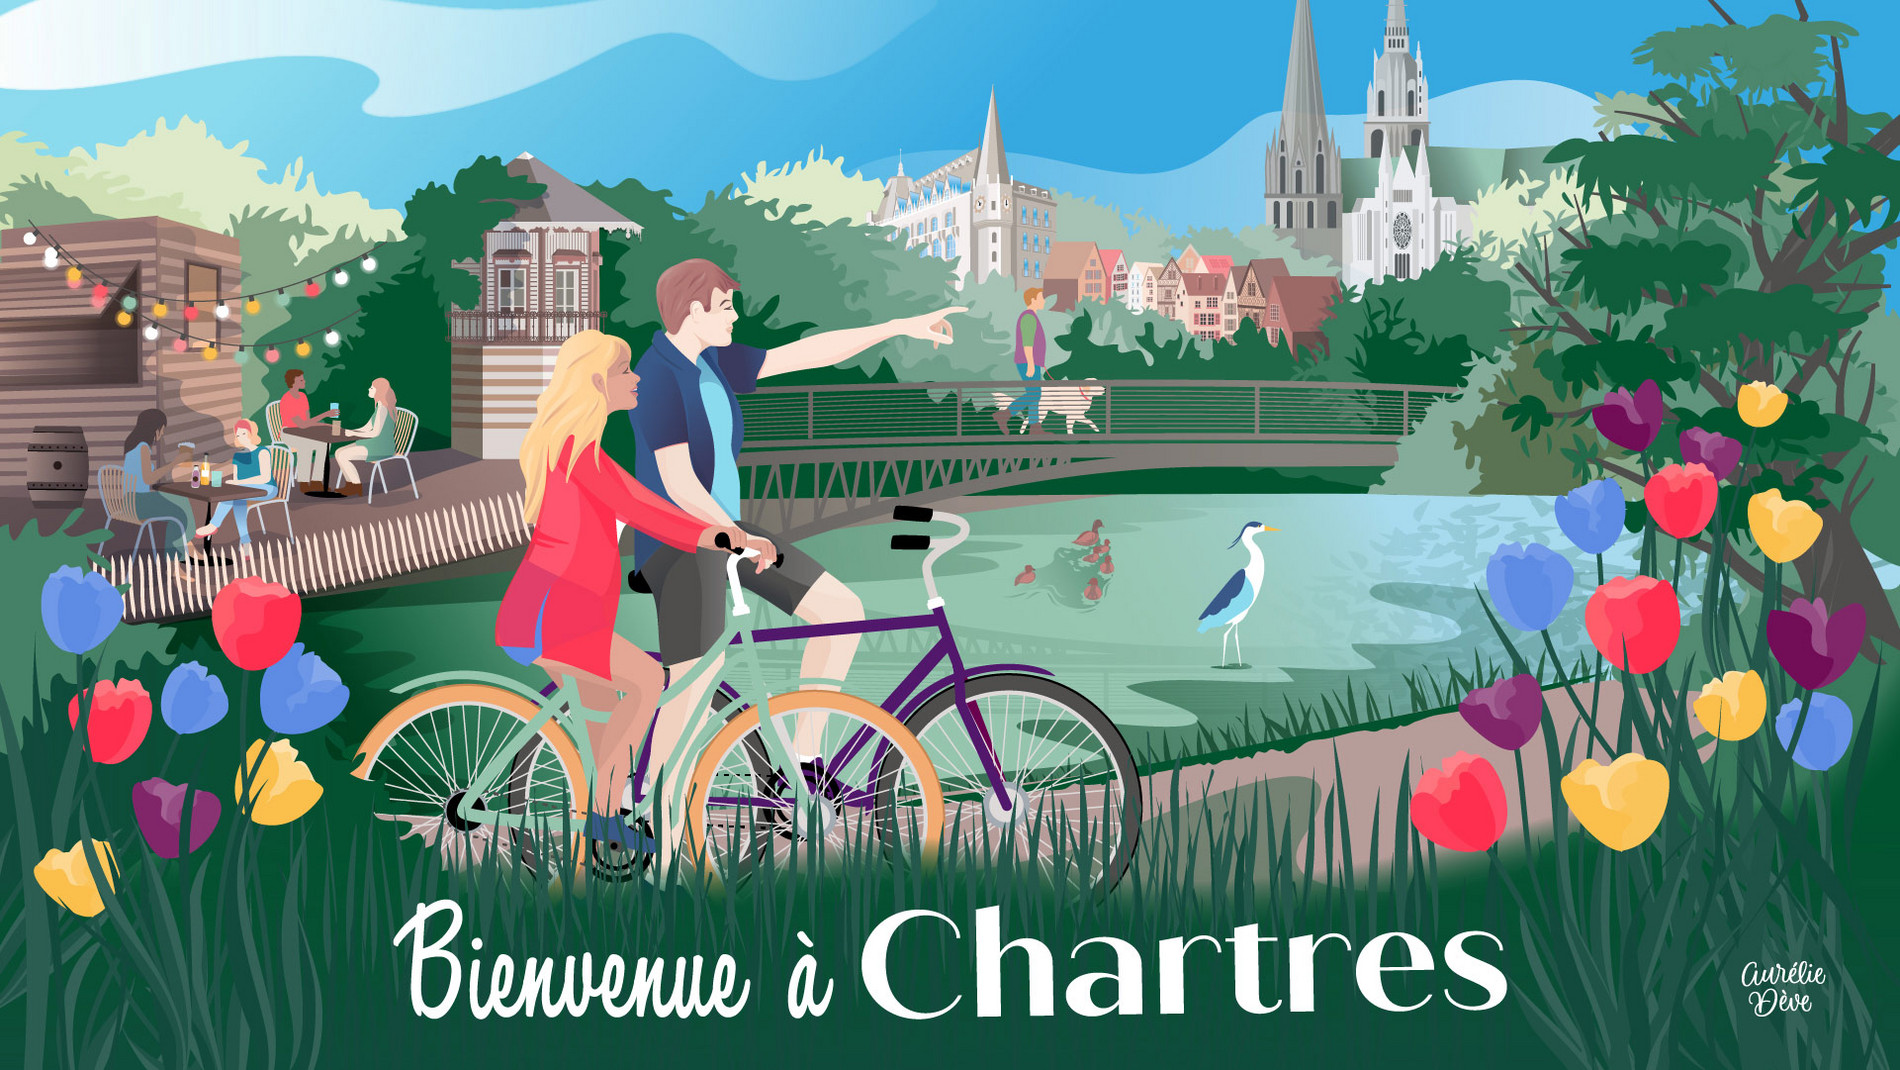 Bienvenue à Chartres